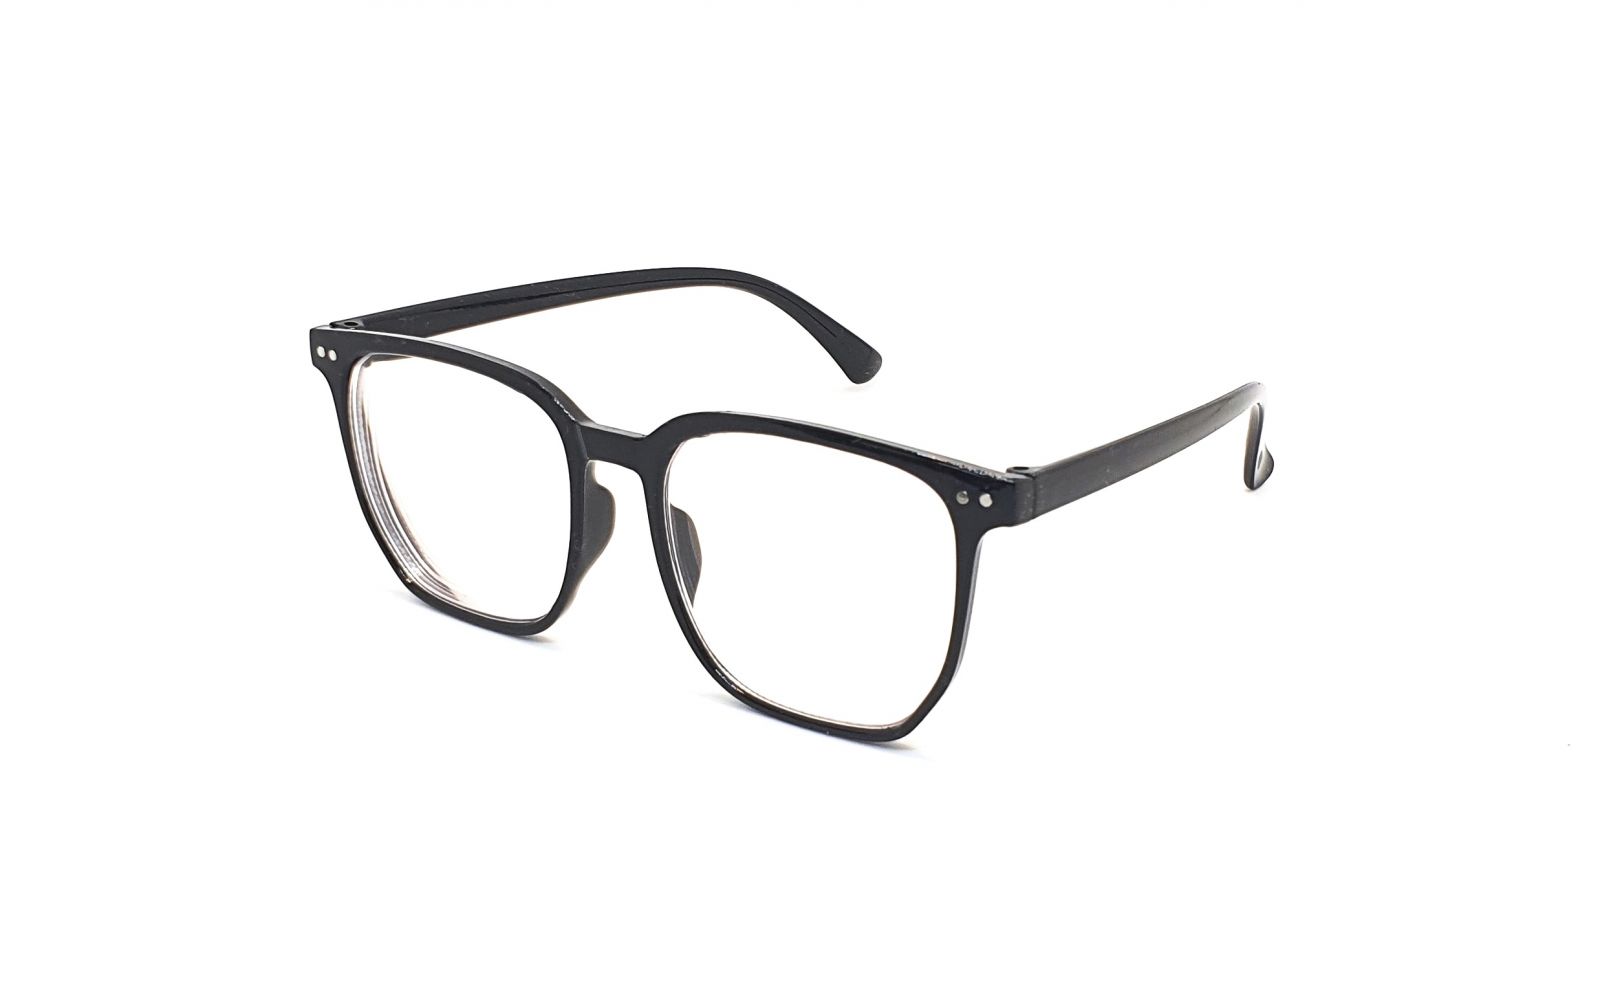 Samozabarvovací dioptrické brýle F24 / -3,50 black